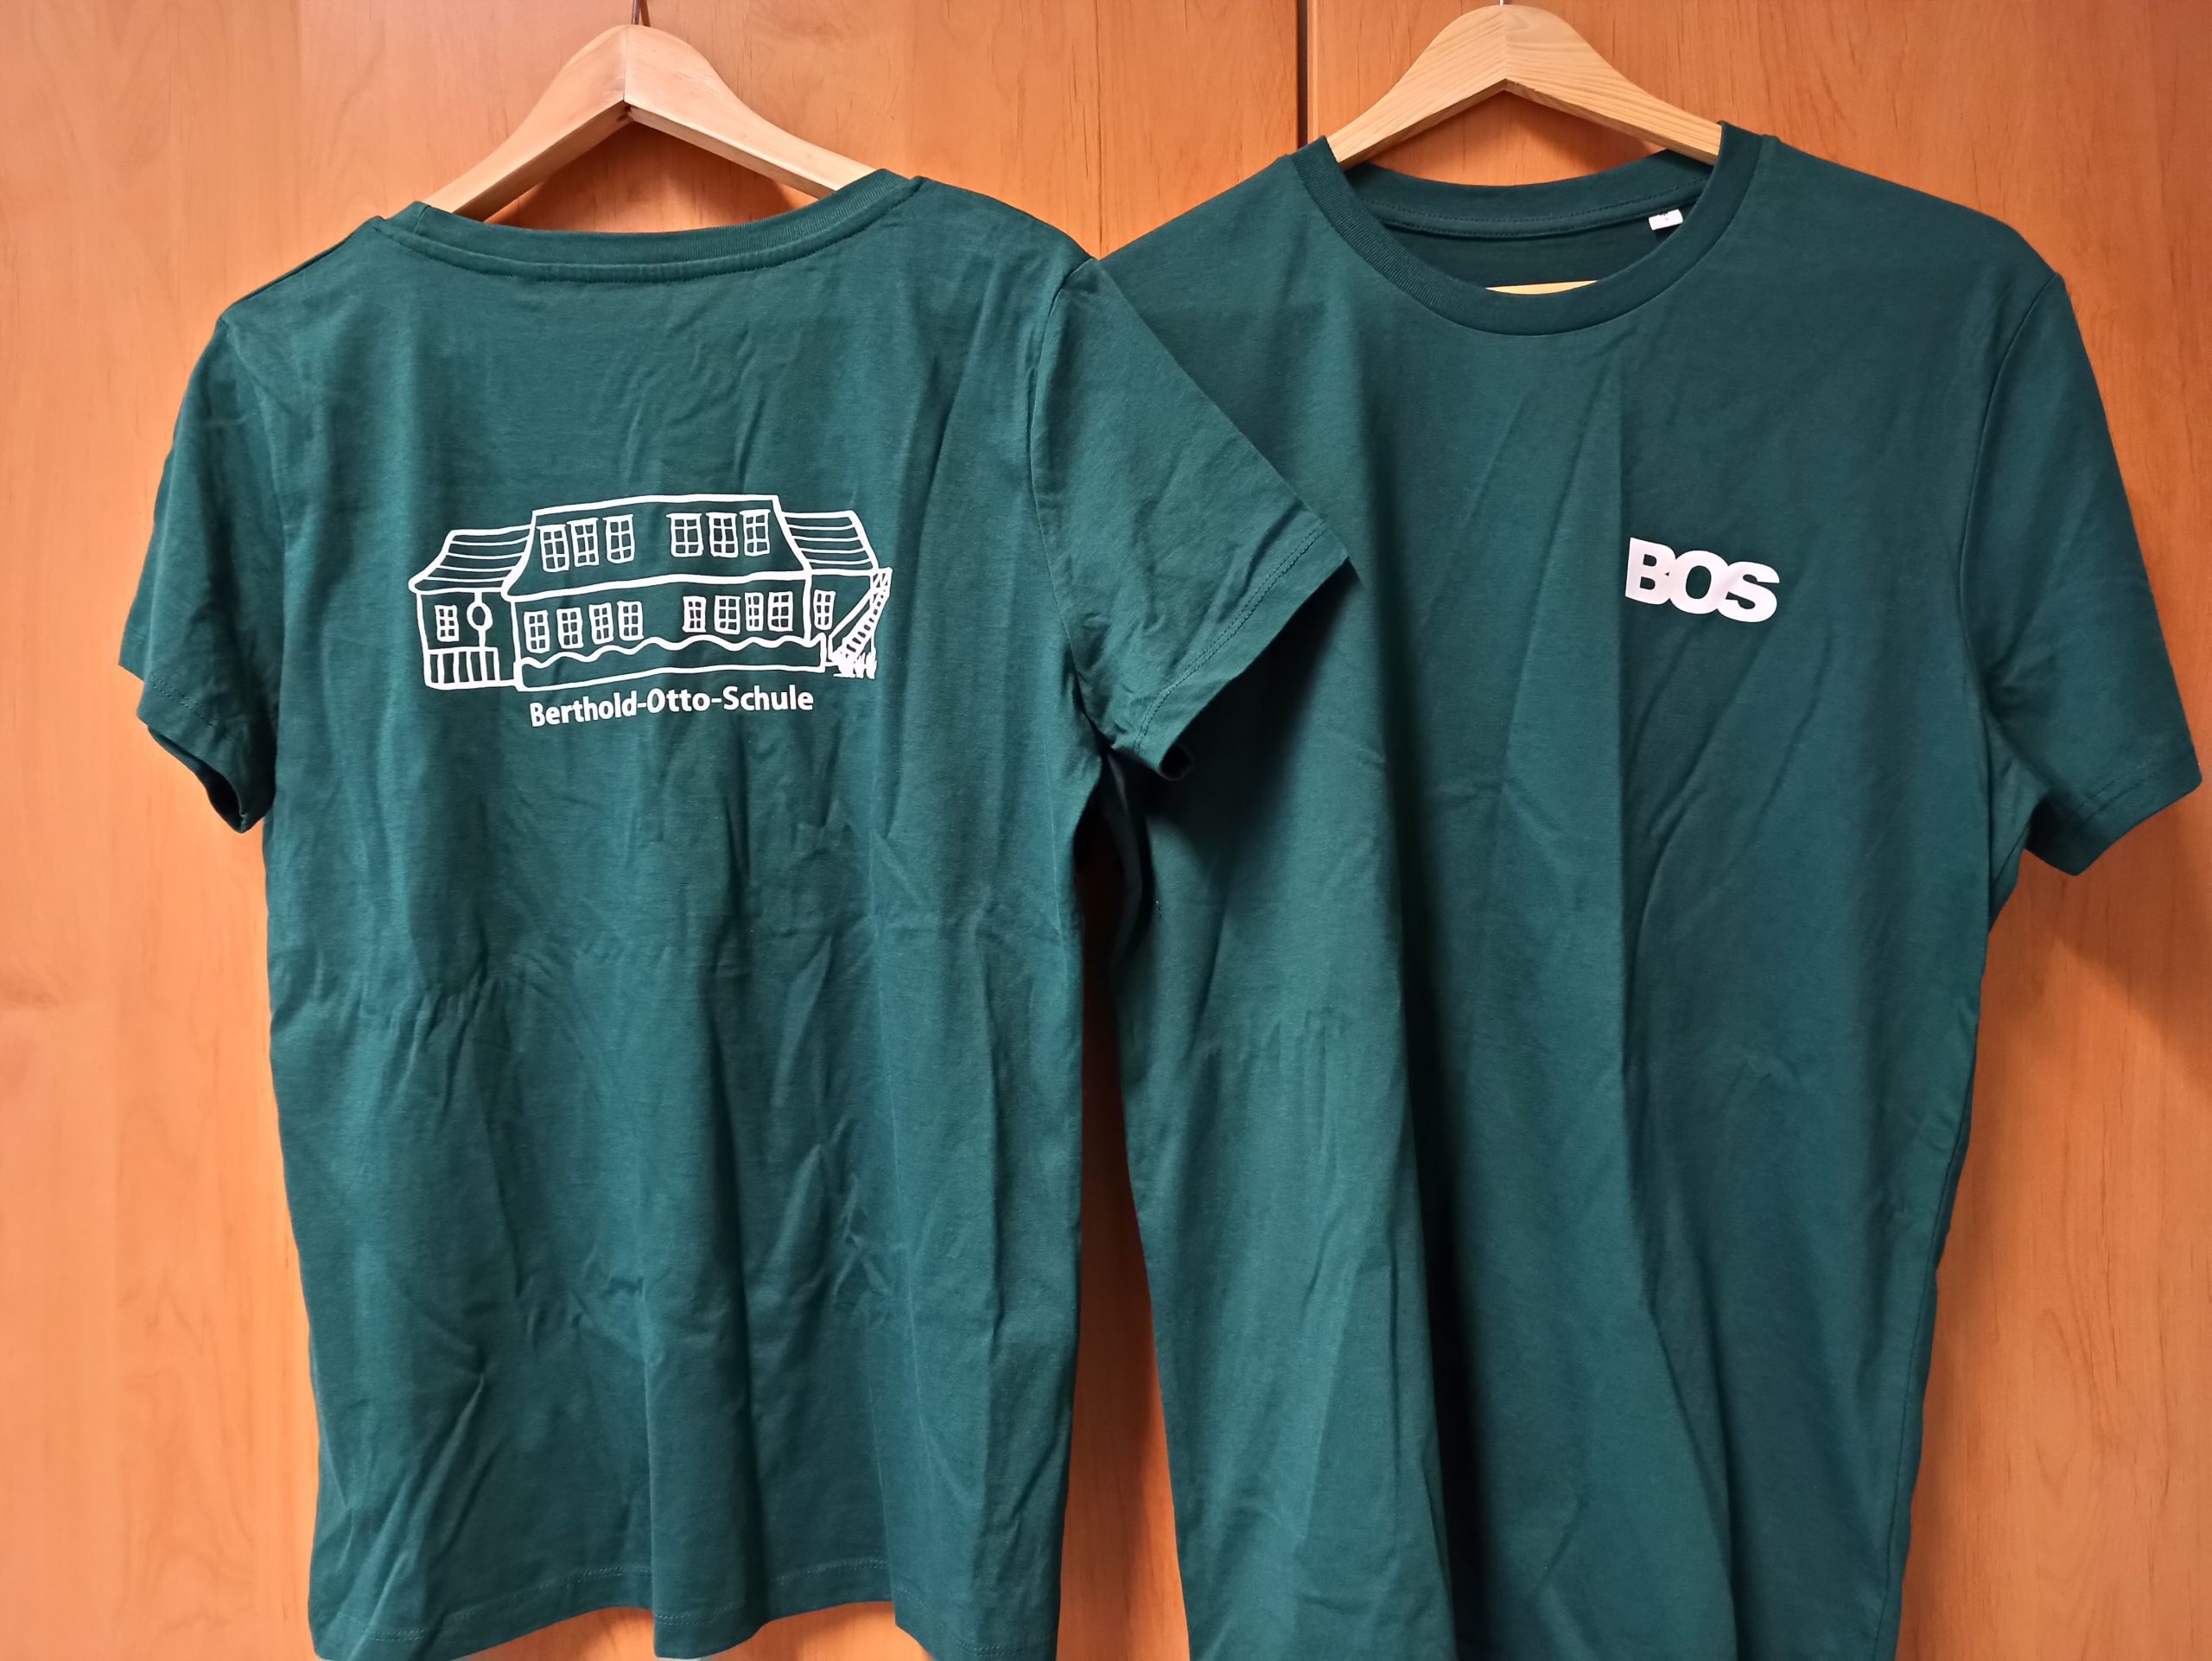 Ein dunkelgrünes T-Shirt mit den Buchstaben BOS auf der Vorderseite und dem gezeichneten Schulgebäude auf der Rückseite.